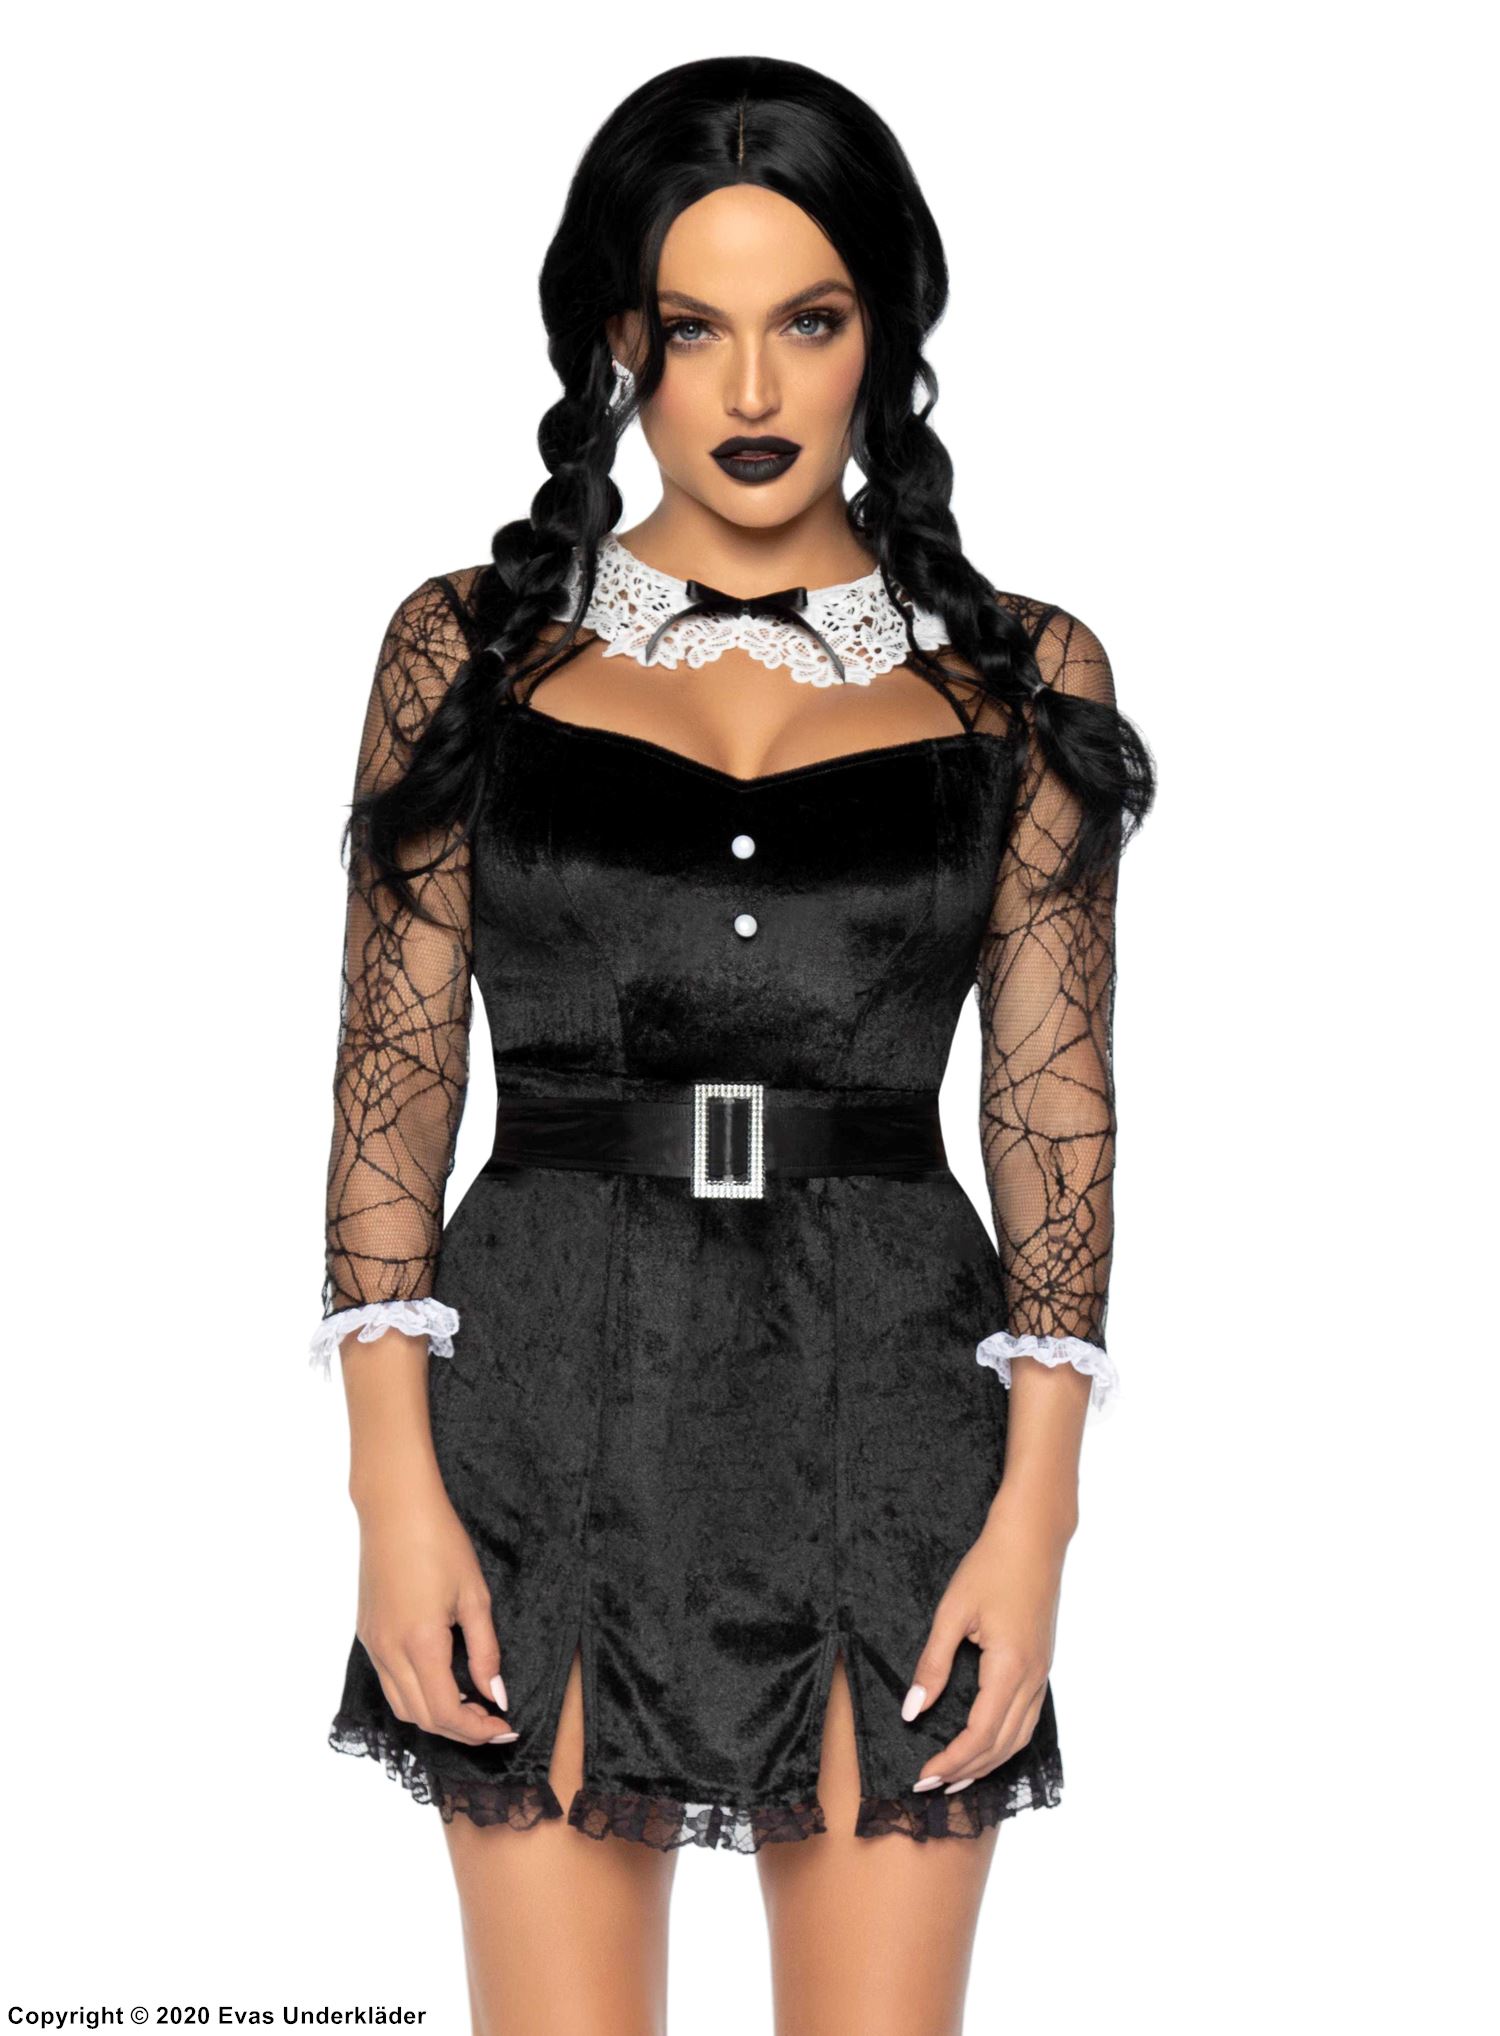 Wednesday from The Addams Family, costume dress, velvet, slit, spider web